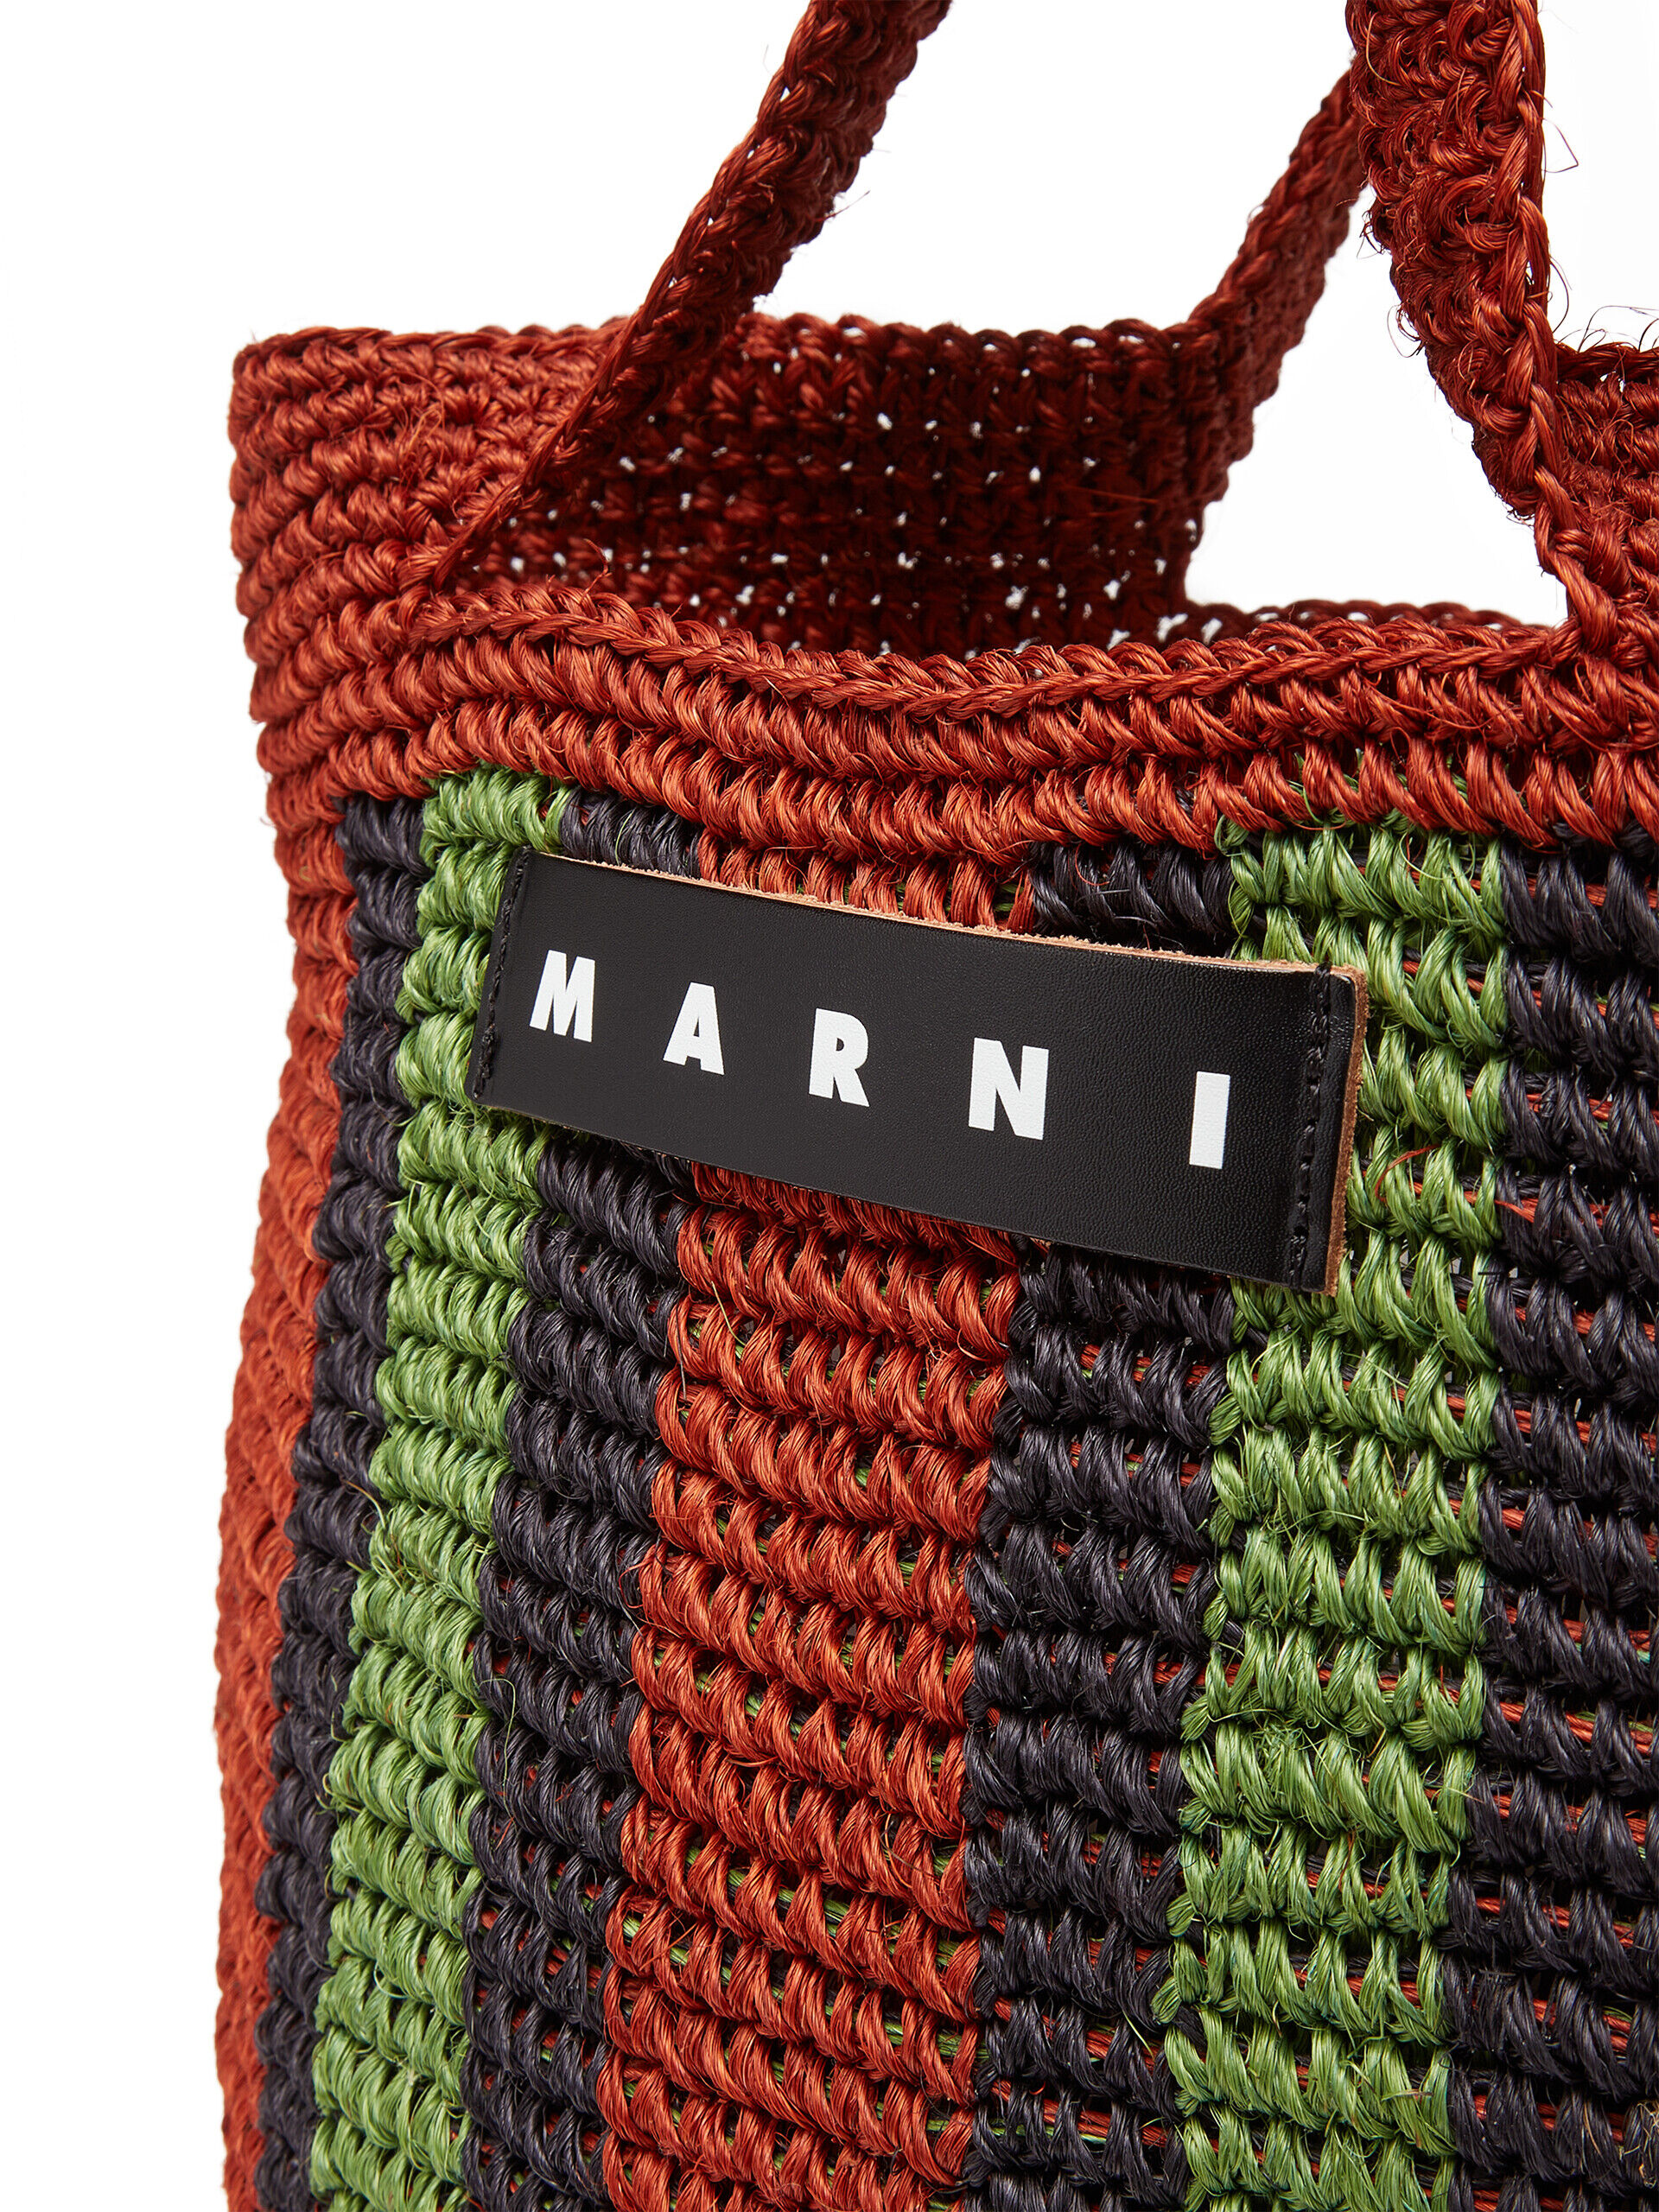 バーントブラウン 天然繊維製 MARNI MARKET FIQUE バッグ | Marni